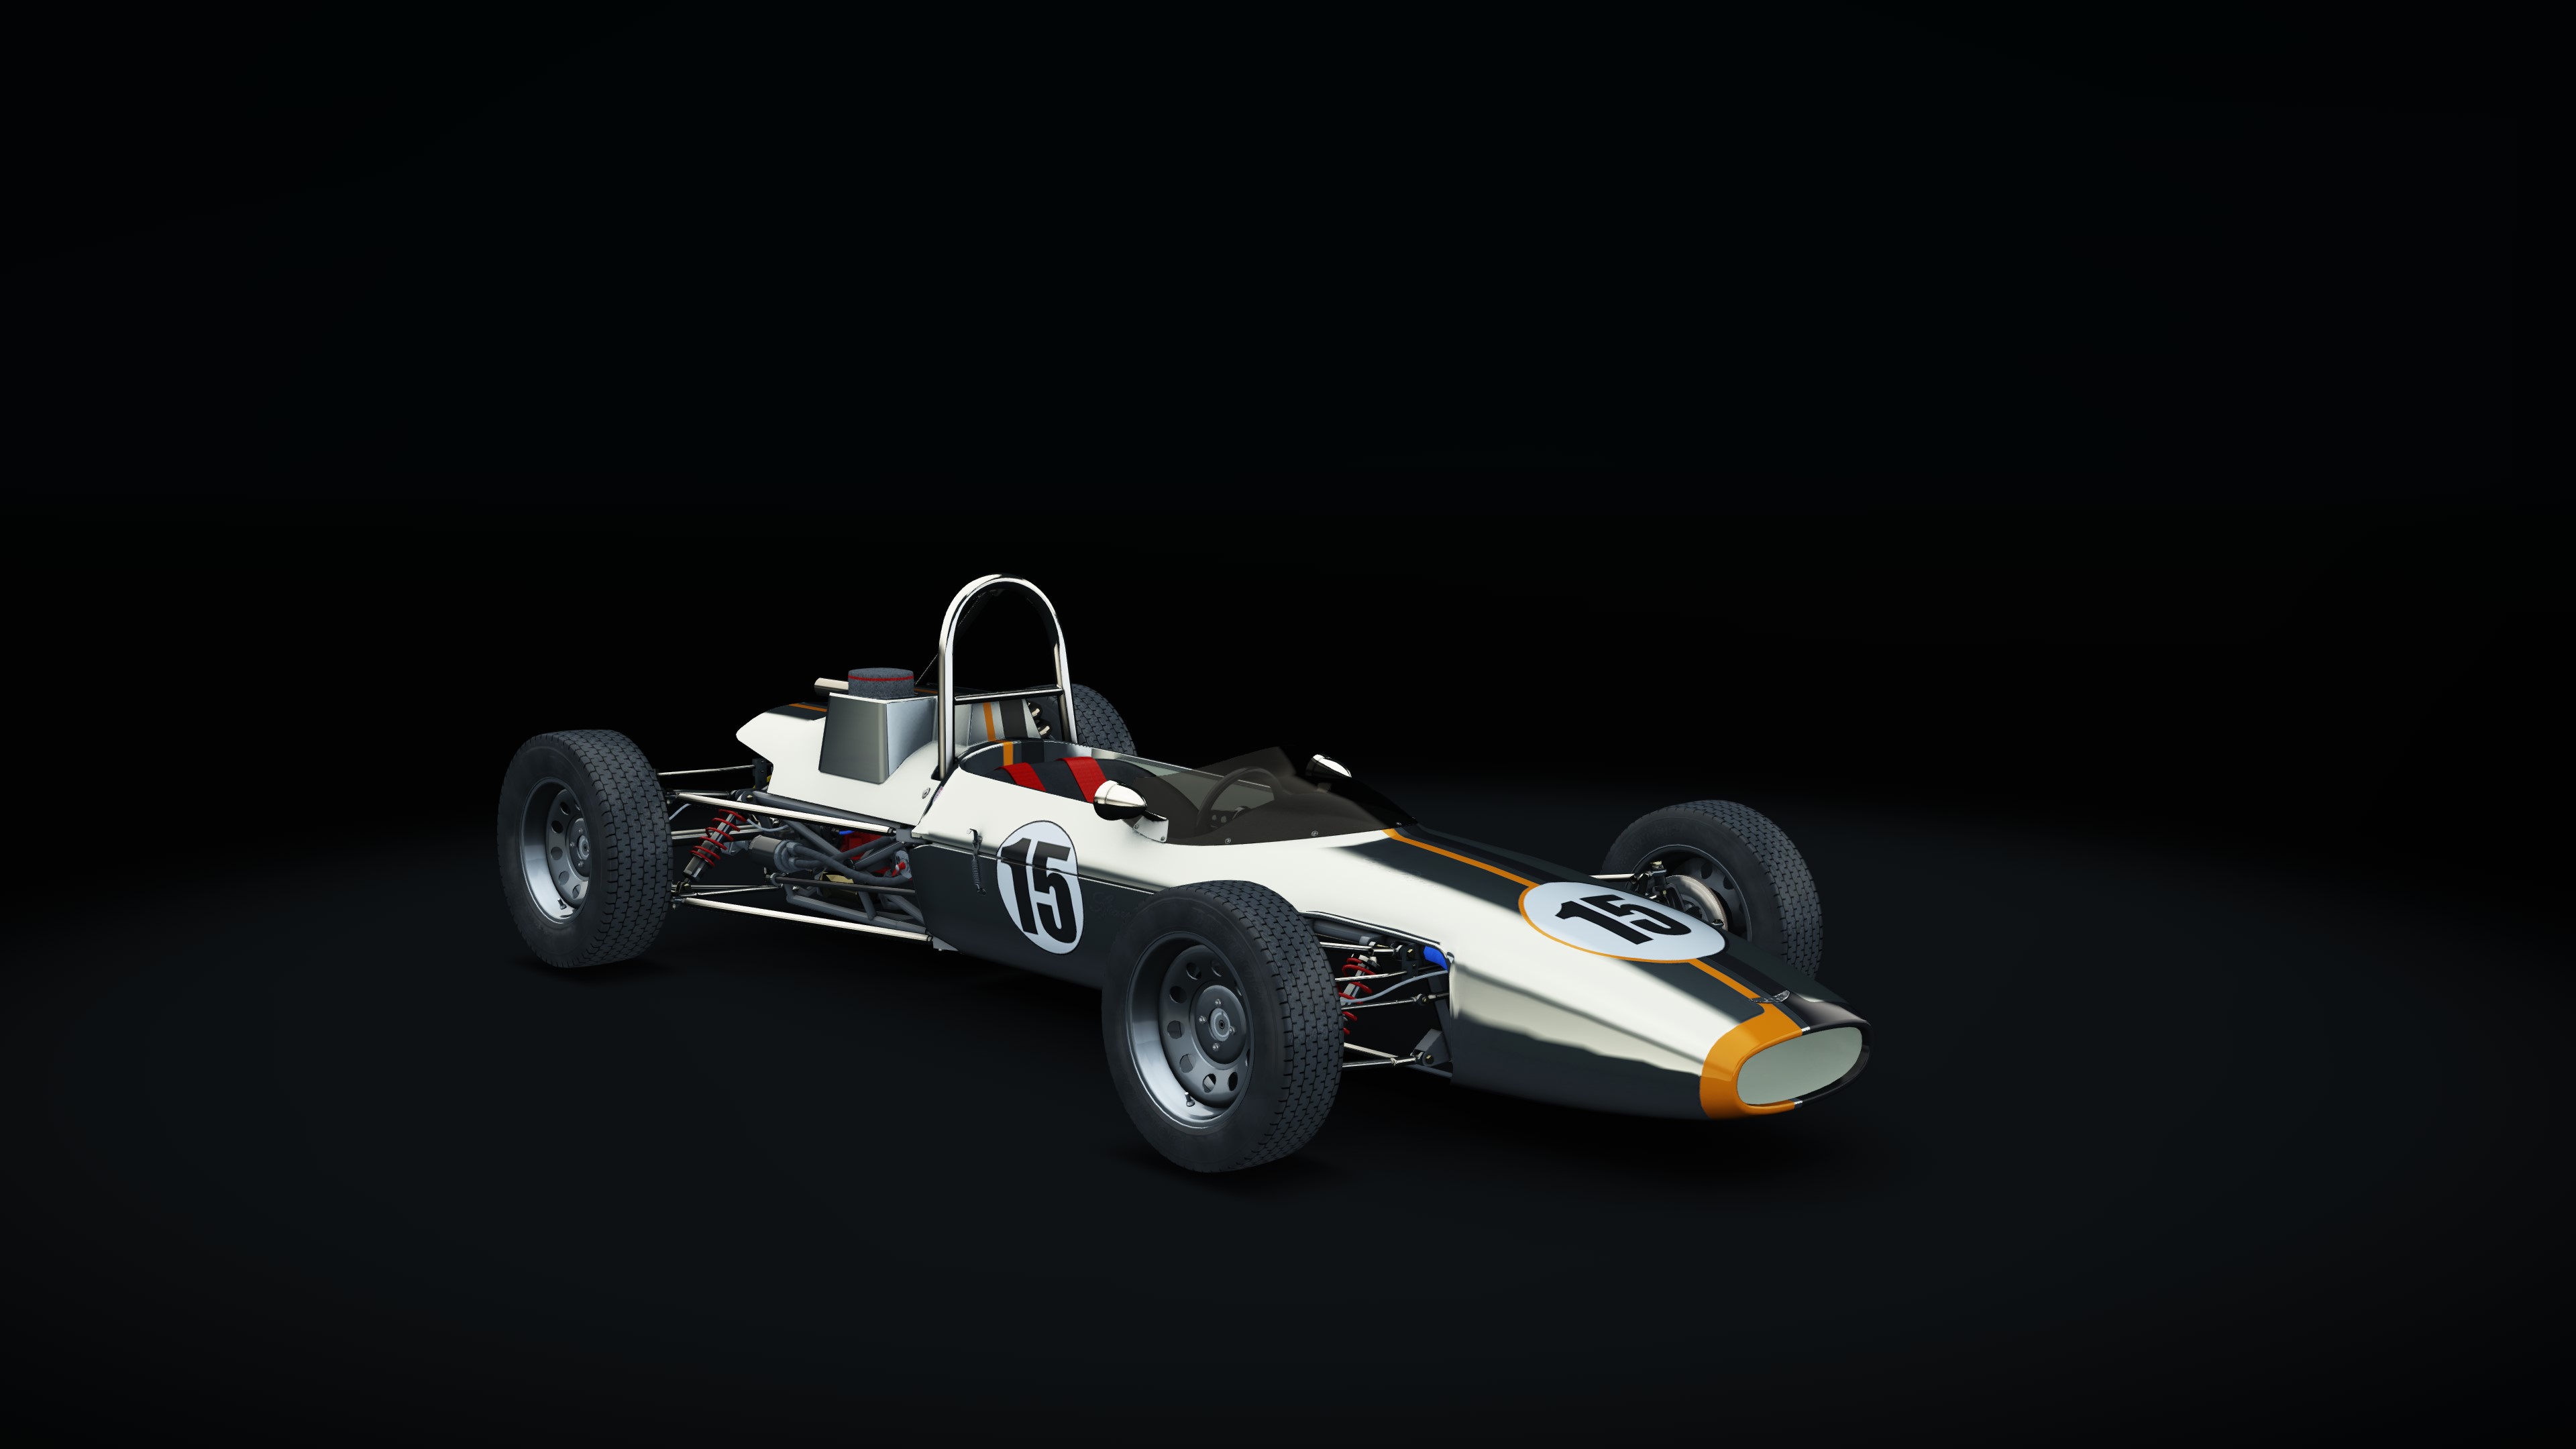 Russell-Alexis Mk. 14 Formula Ford, skin 15LByron